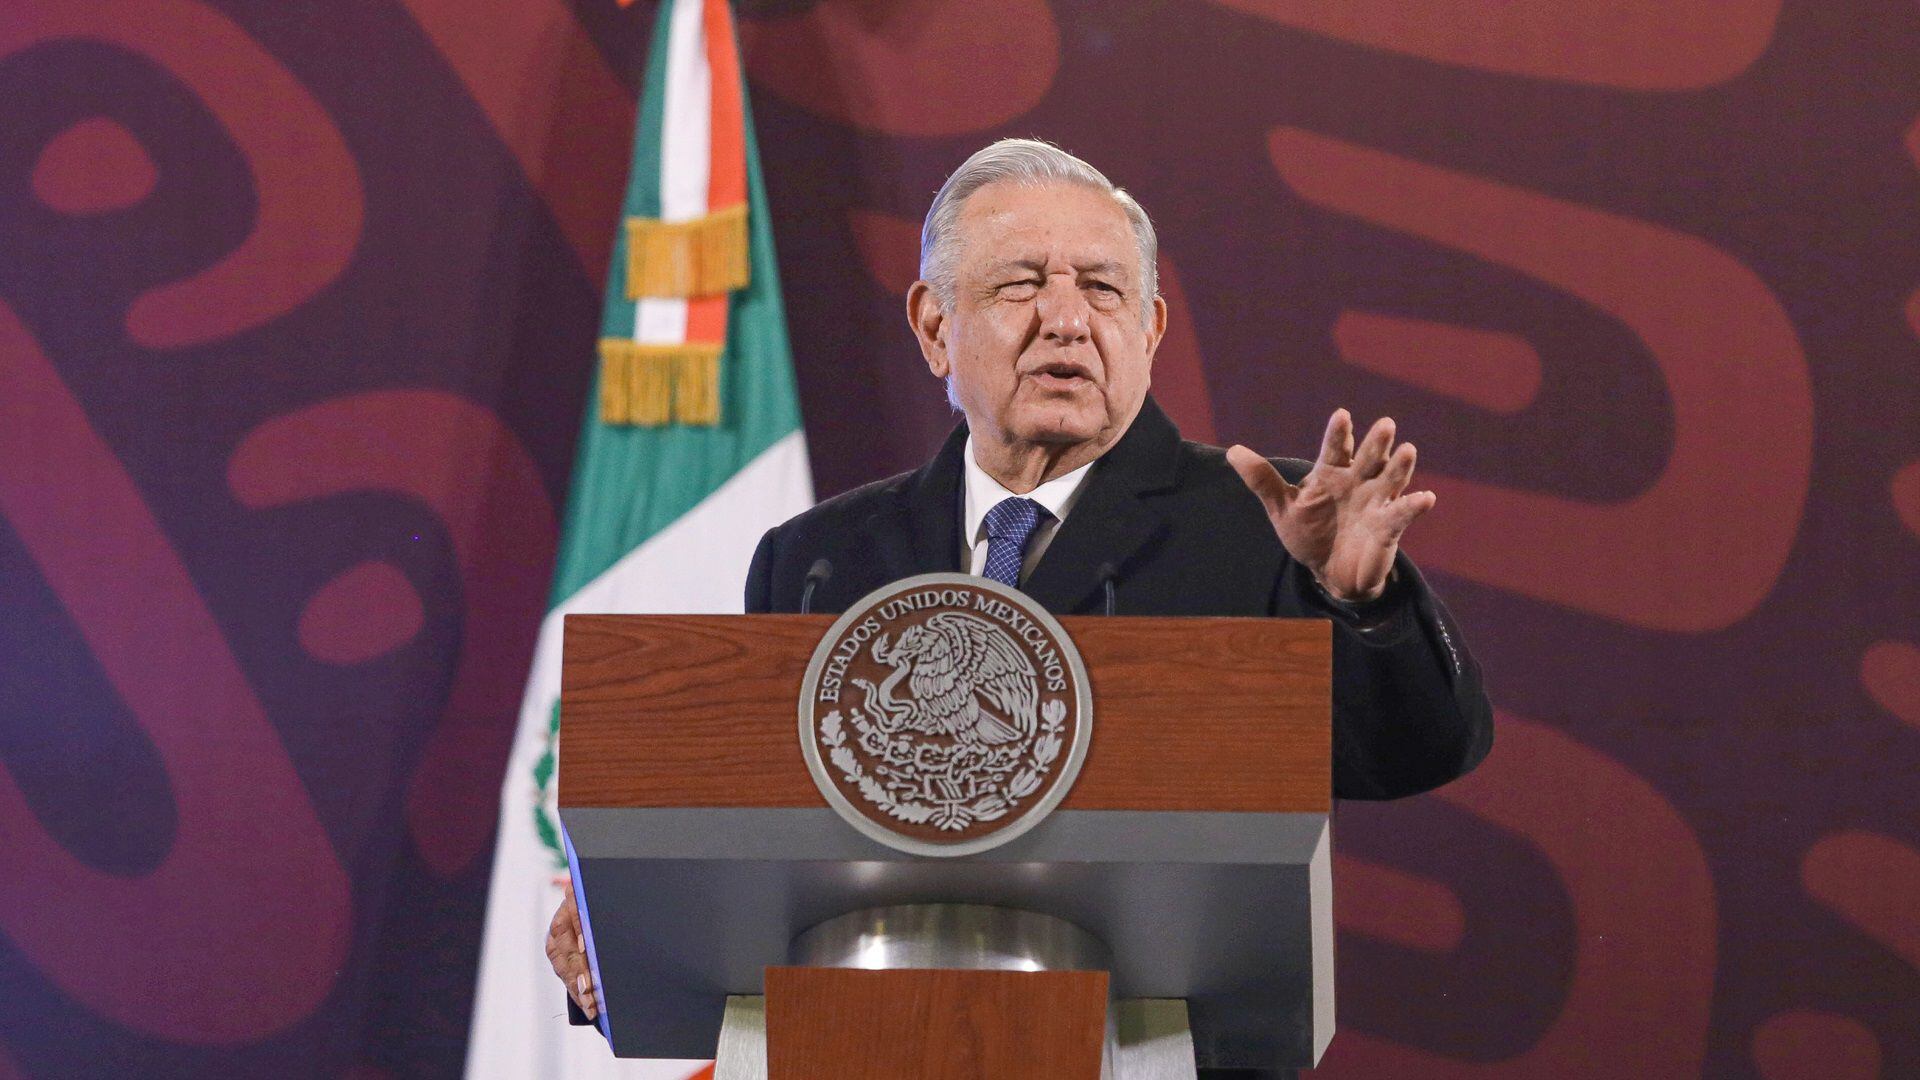 El presidente López Obrador habló nuevamente sobre el supuesto hackeo que vulneró datos de periodistas.